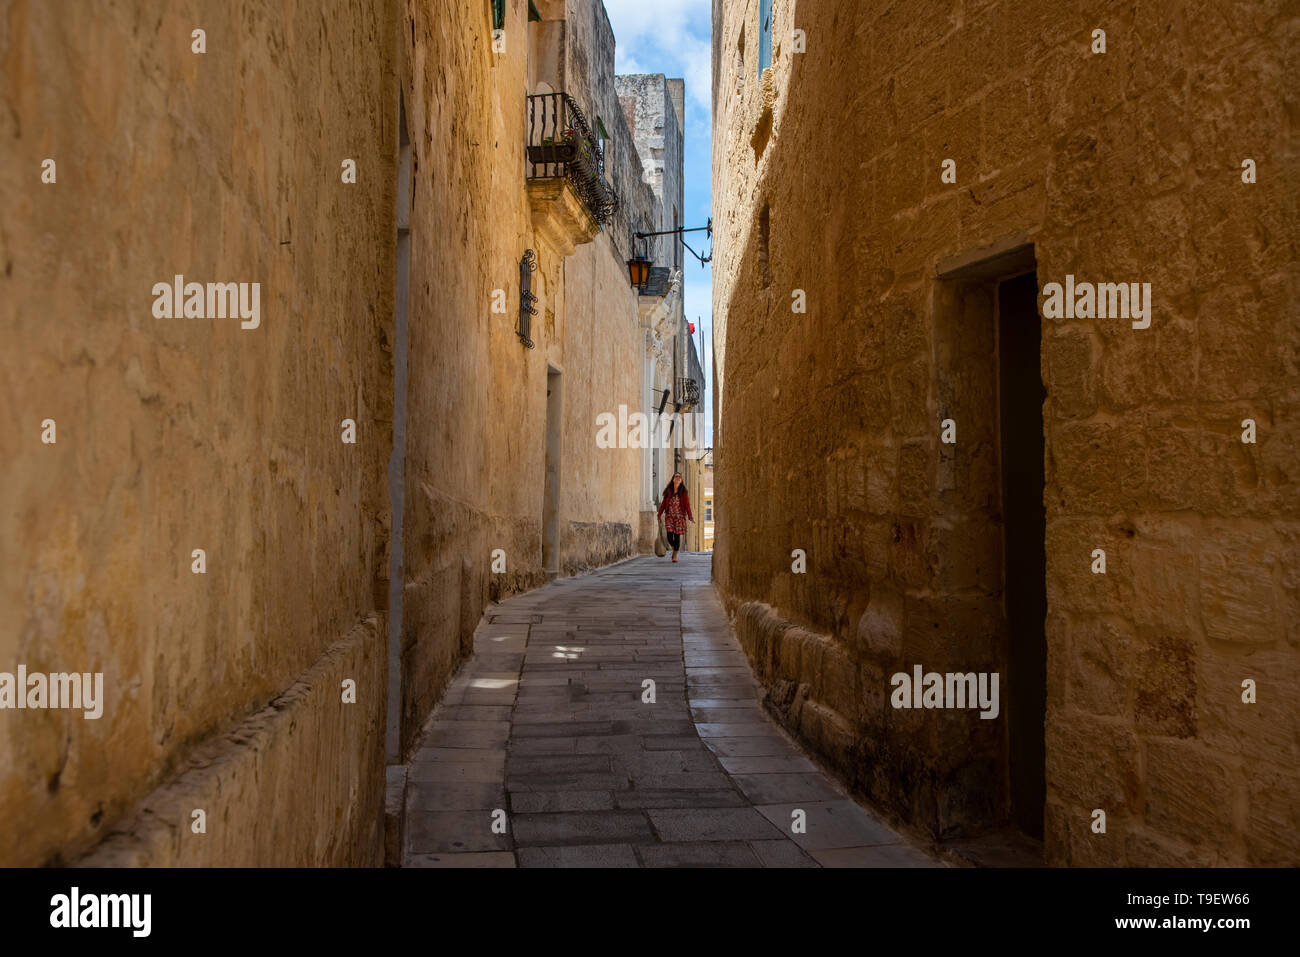 Europa, Malta, Mdina. Typische historische Gasse mit Kalkstein Gebäuden gesäumt. Stockfoto